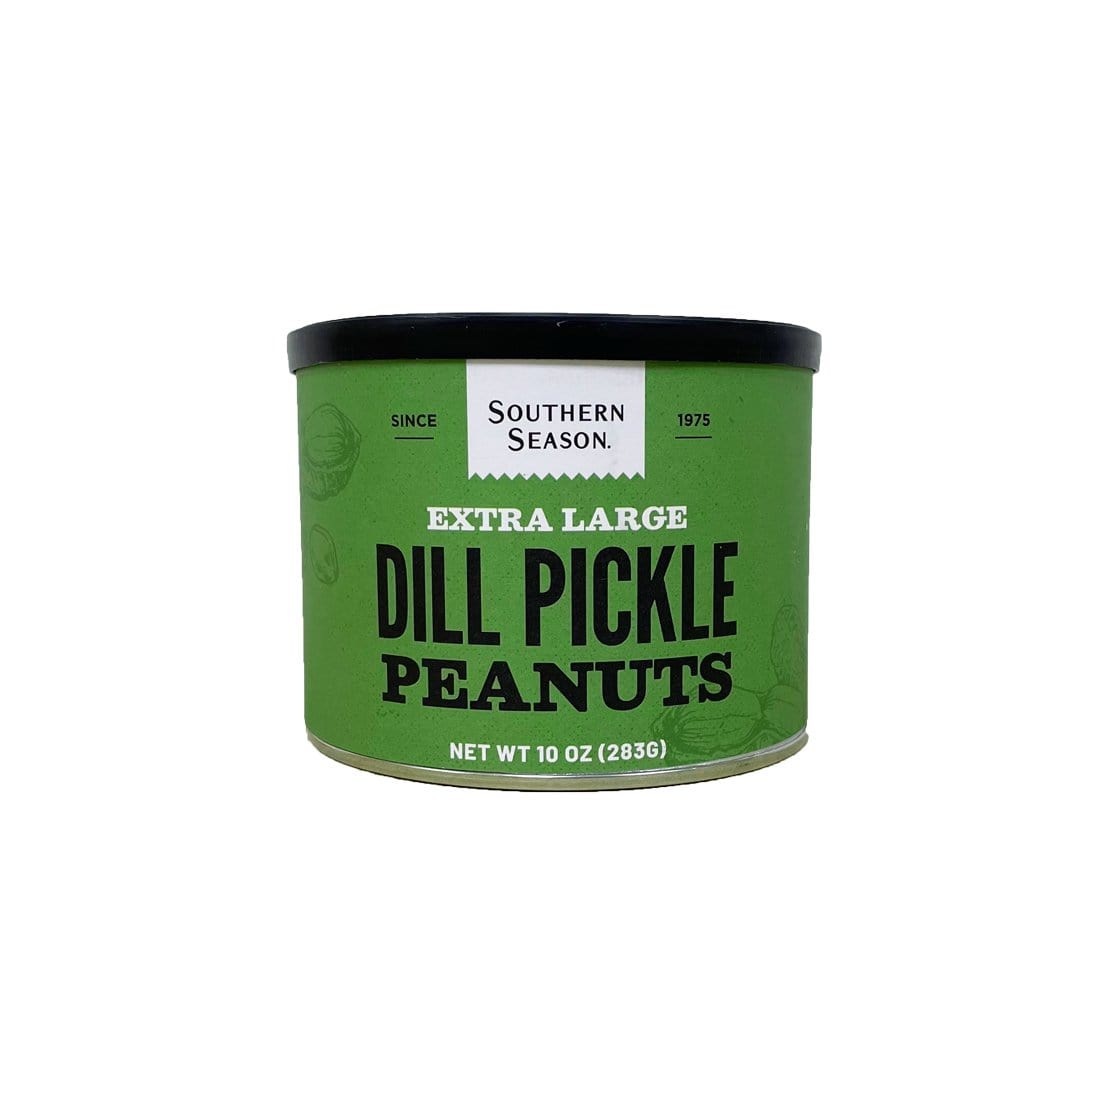 Southern Season Southern Season Dill Pickle Peanuts 10 oz